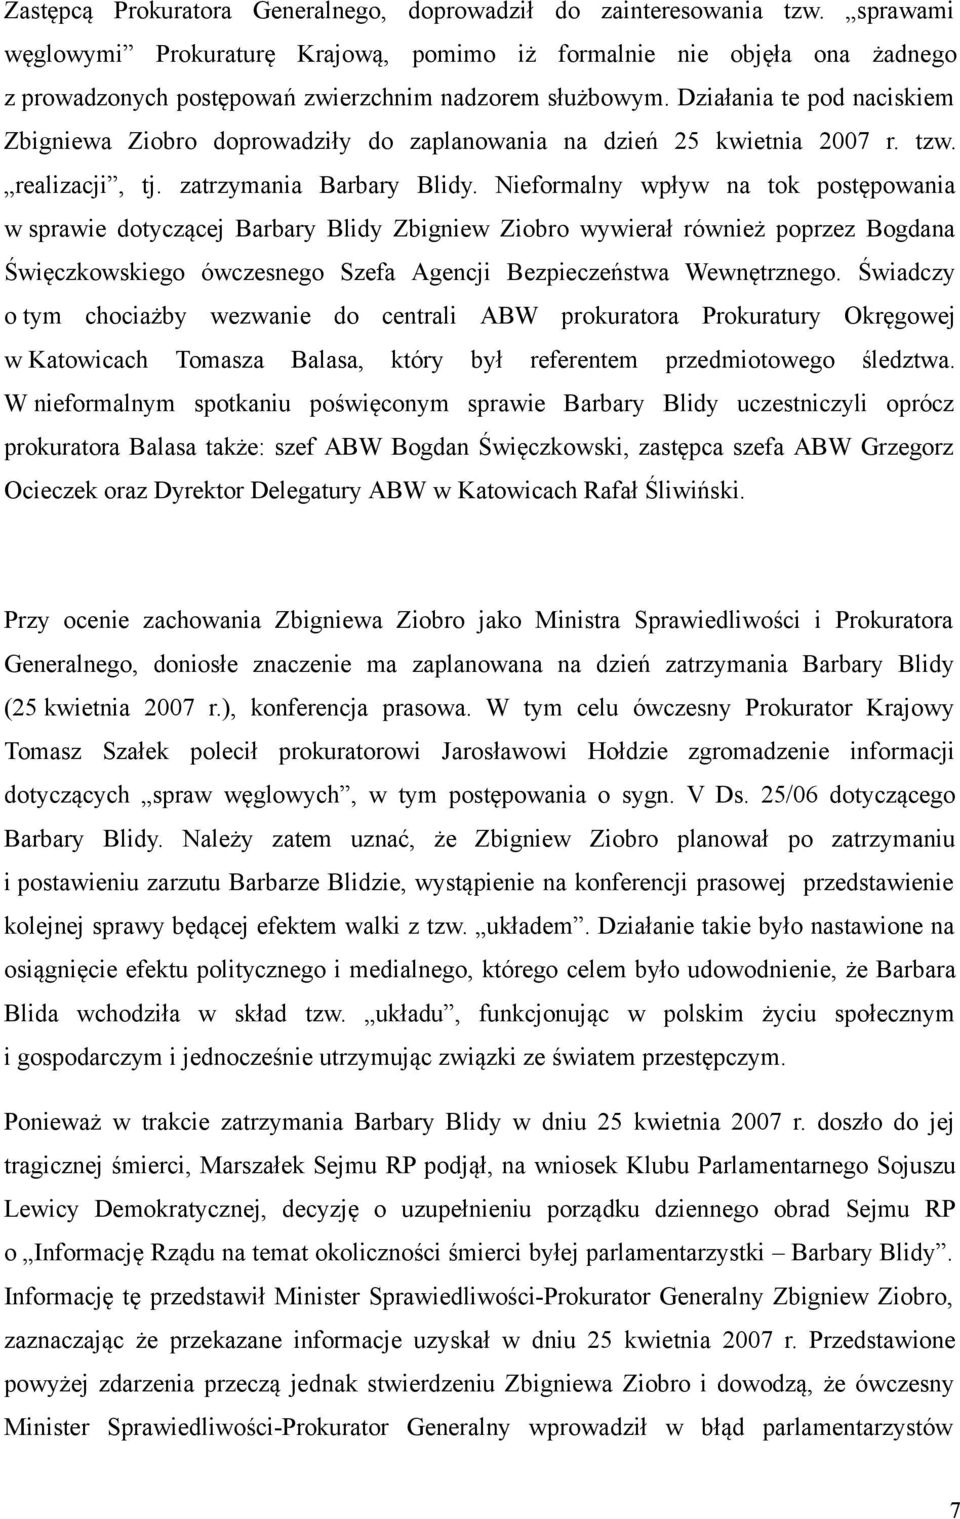 Działania te pod naciskiem Zbigniewa Ziobro doprowadziły do zaplanowania na dzień 25 kwietnia 2007 r. tzw. realizacji, tj. zatrzymania Barbary Blidy.